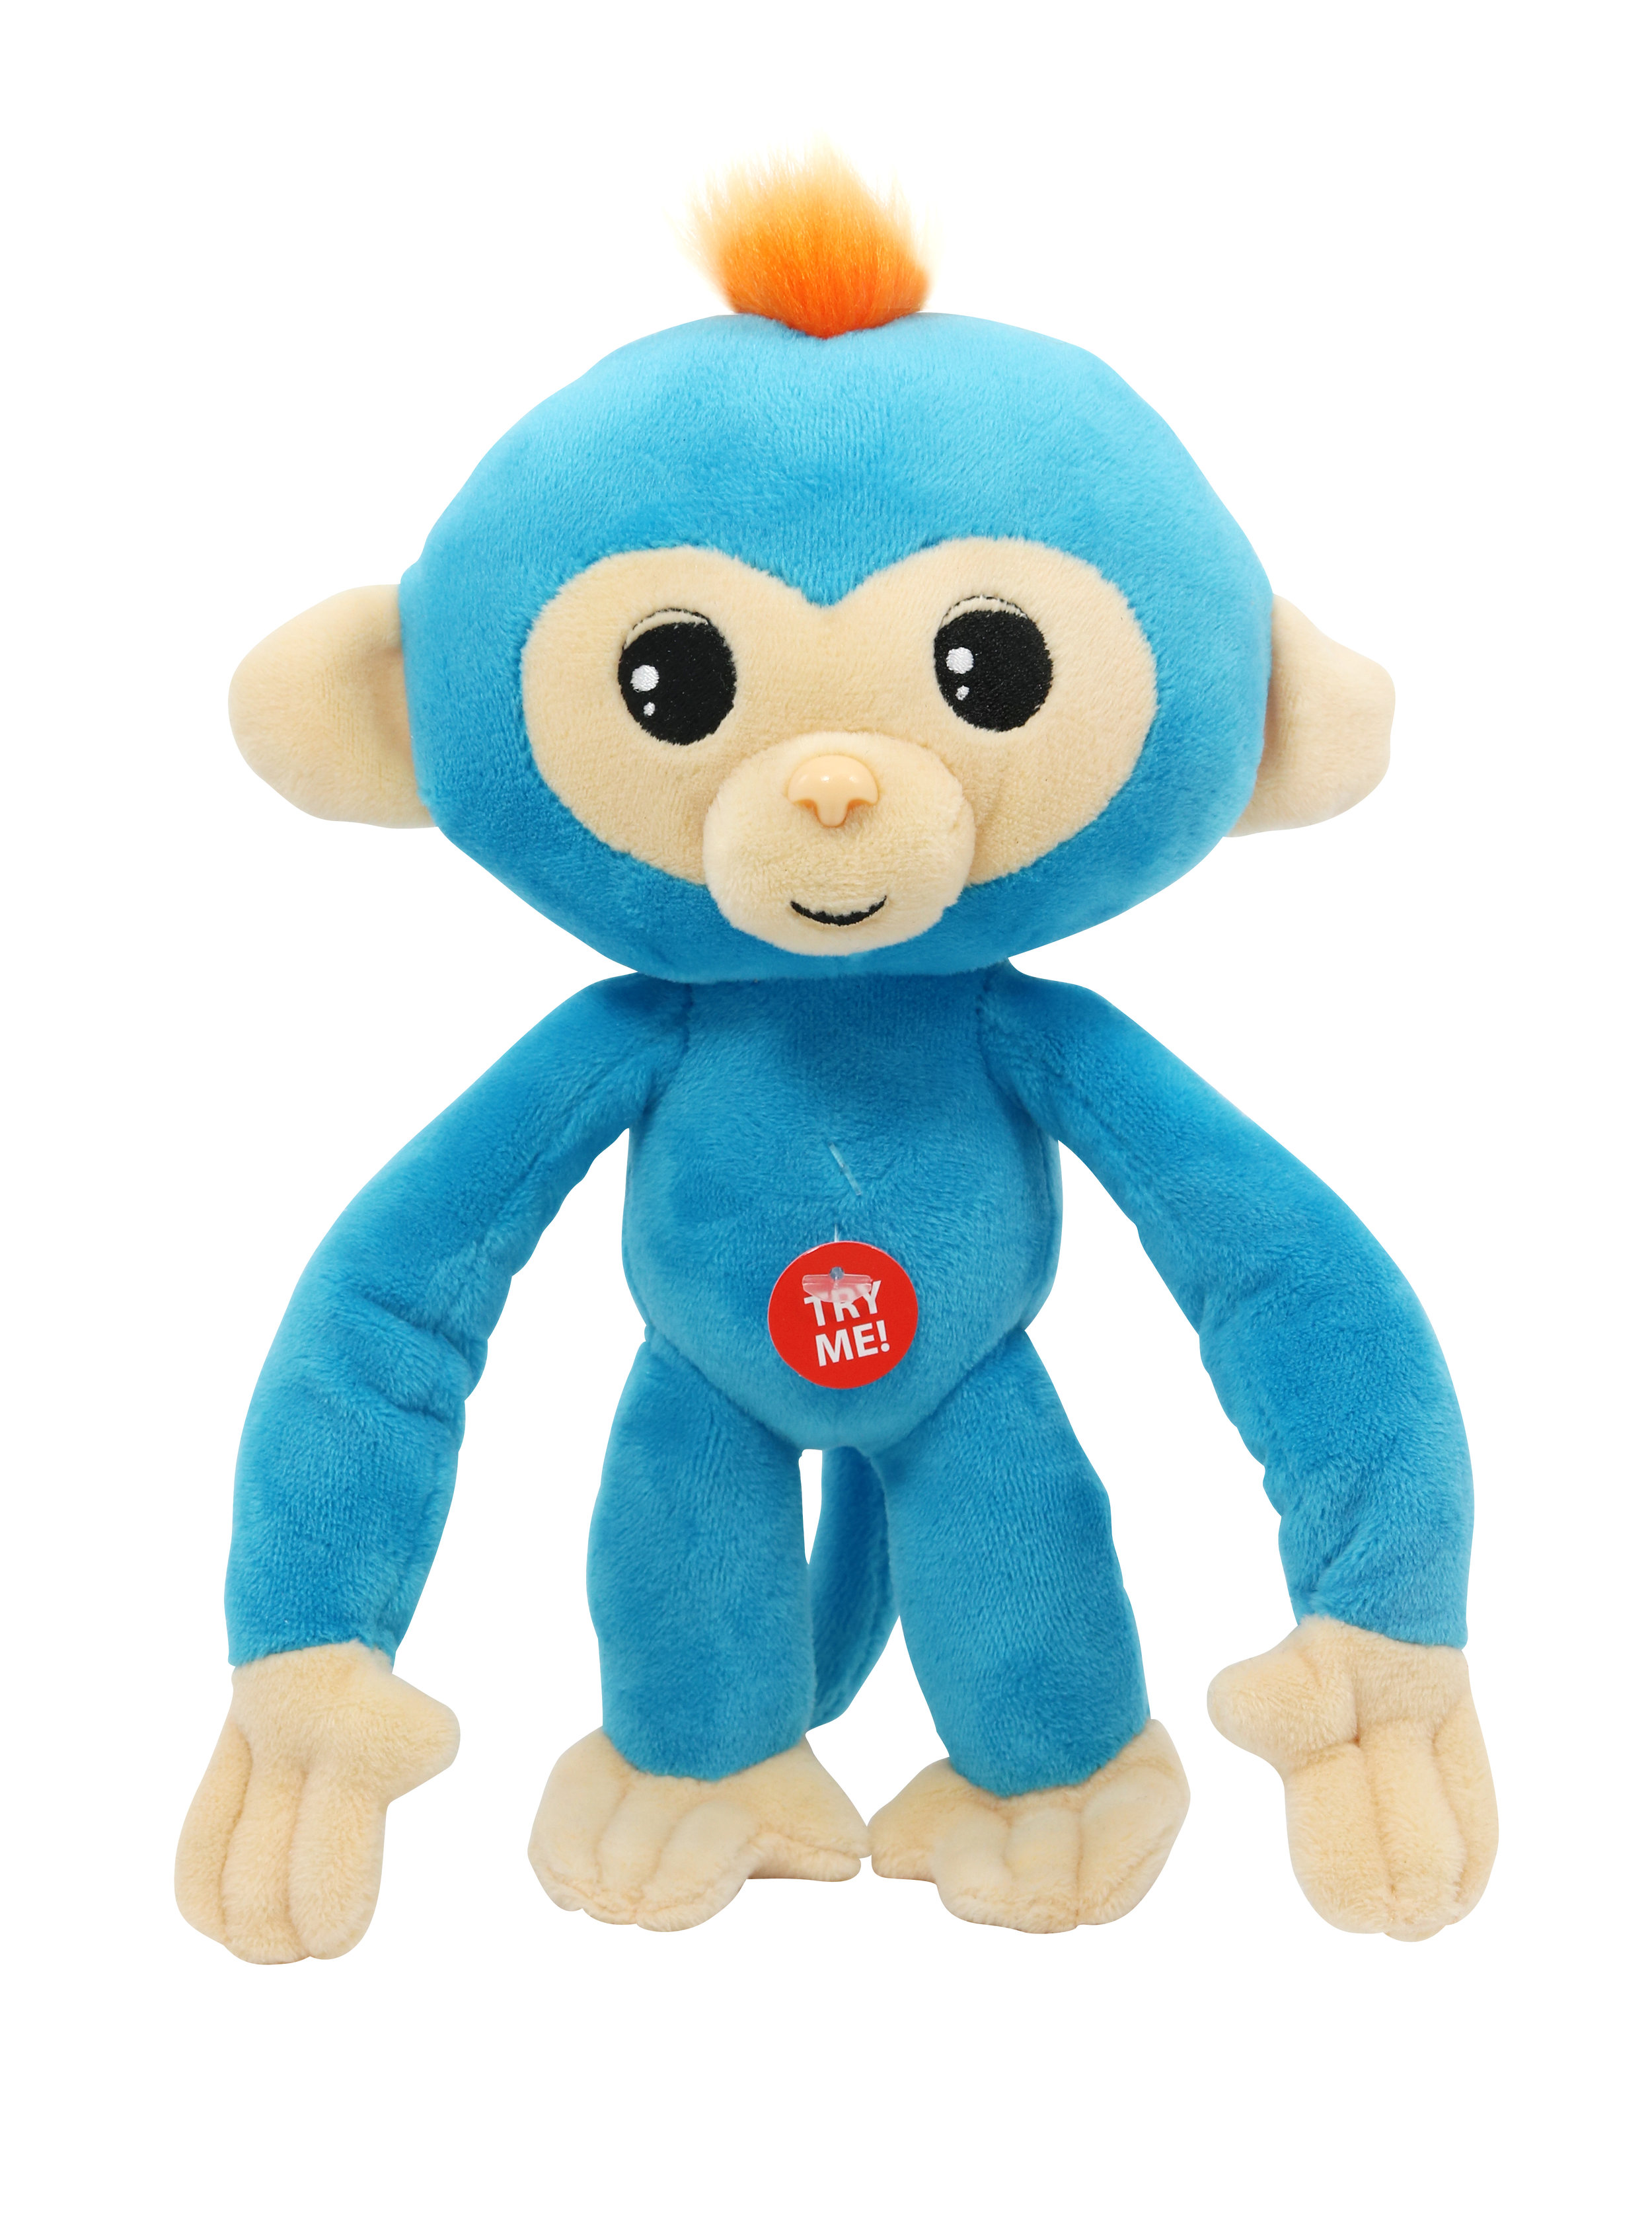 Commonwealth Toys Fingerlings Monkey Large Plush Blue 10903 